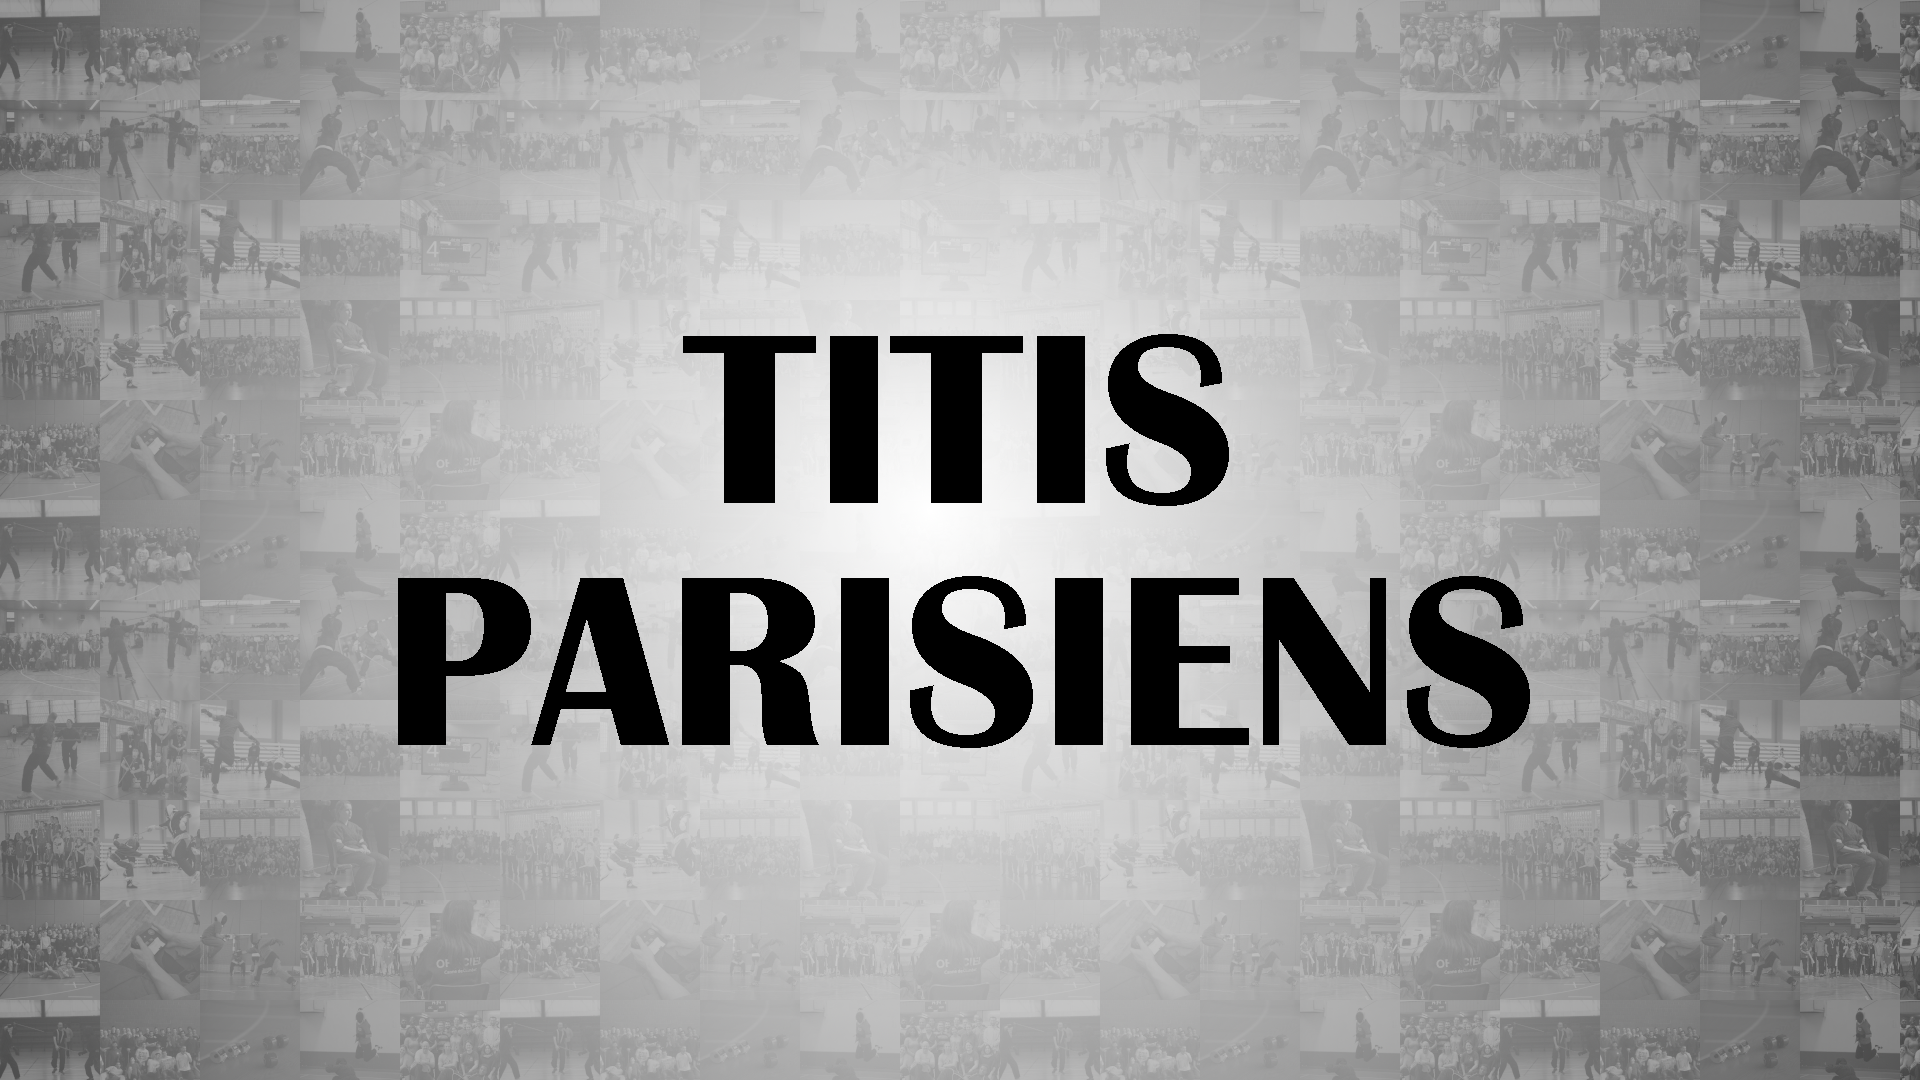 titis parisiens canne de combat competition paris